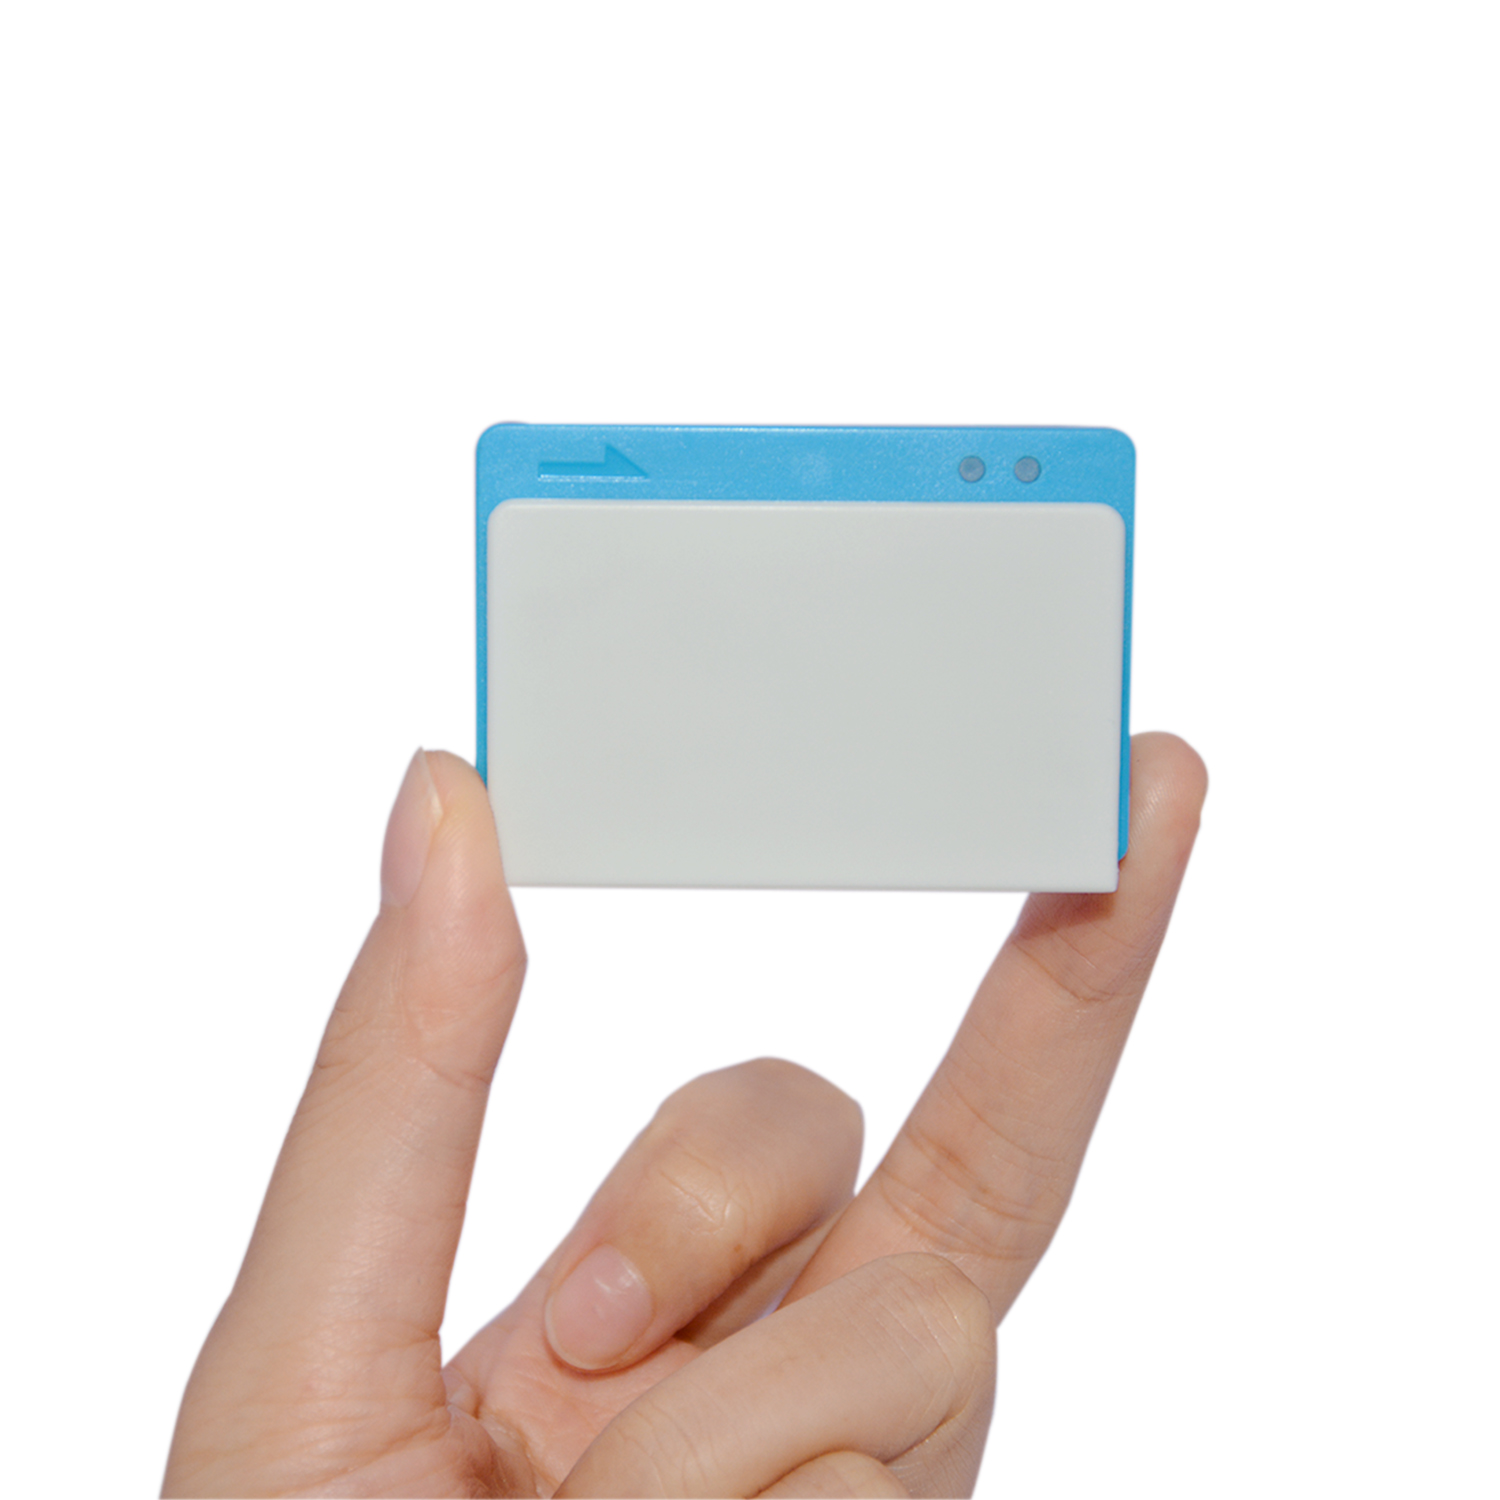 Heißer Verkauf Bluetooth Android IOS Mobile Kartenleser für mobiles Bezahlen MPR100